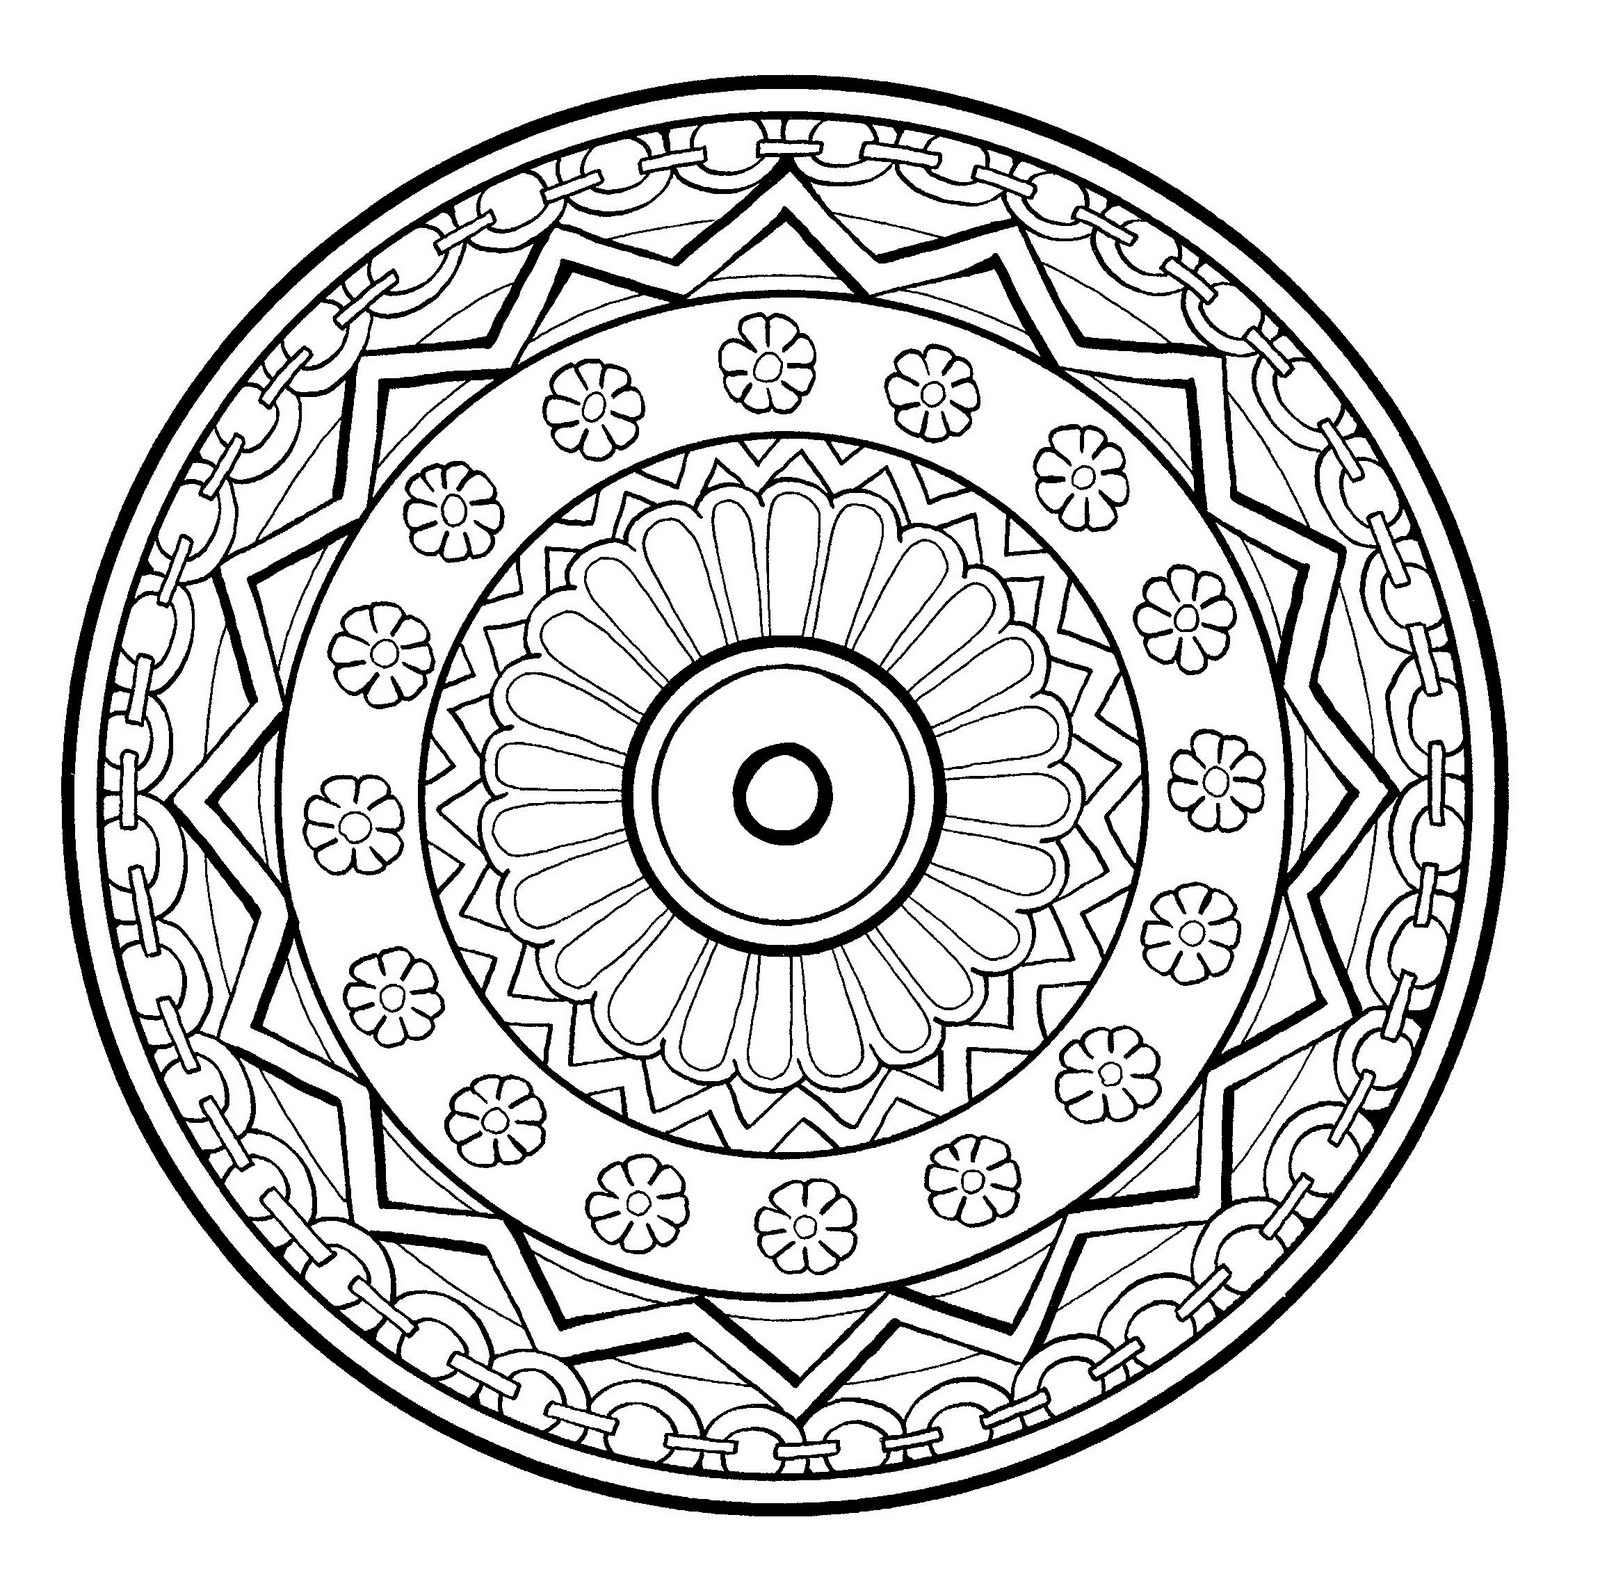 Mandala soberba com espiral, bastante florida com diferentes elementos como flores, formas geométricas ou correntes à volta. Nível bastante normal.